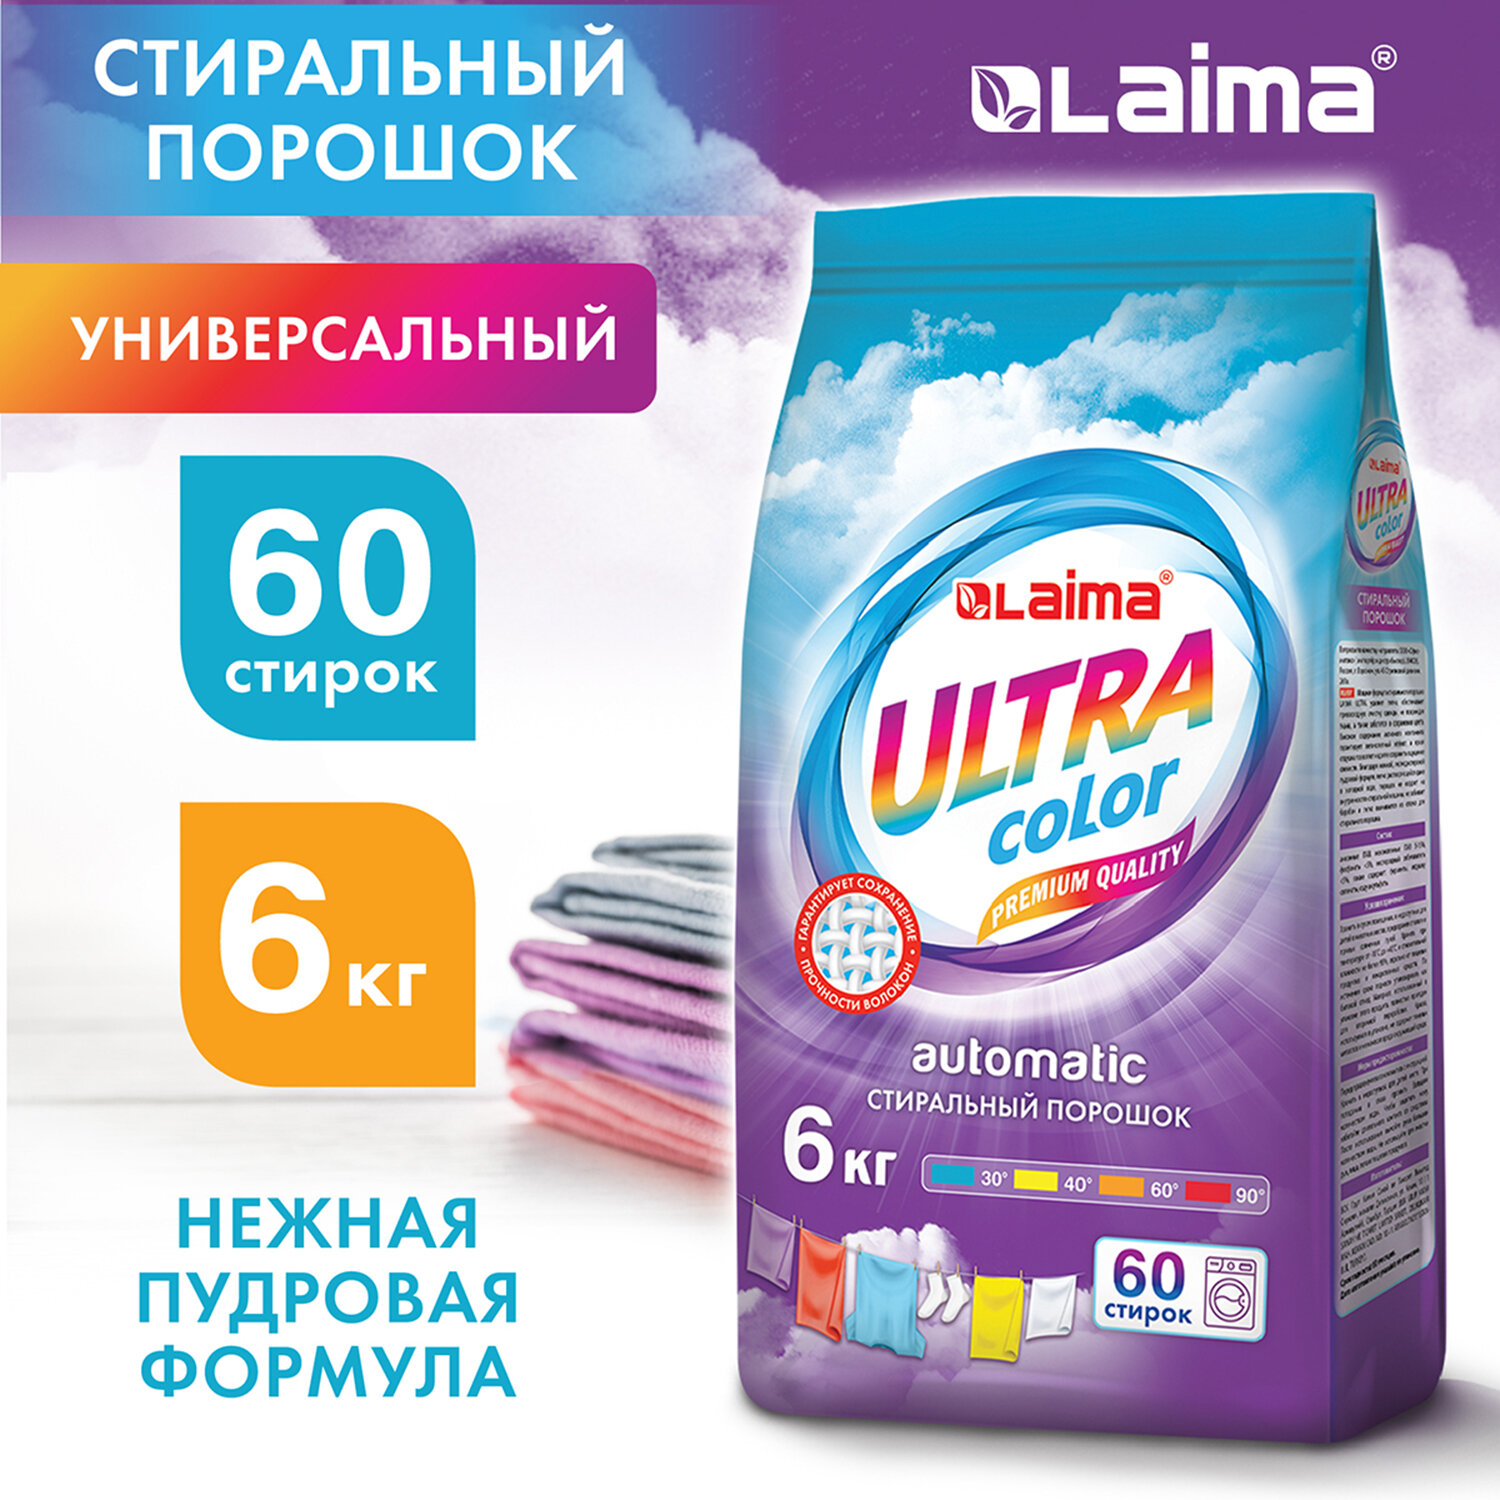 LAIMA  - LAIMA ULTRA Color 608538, 6 